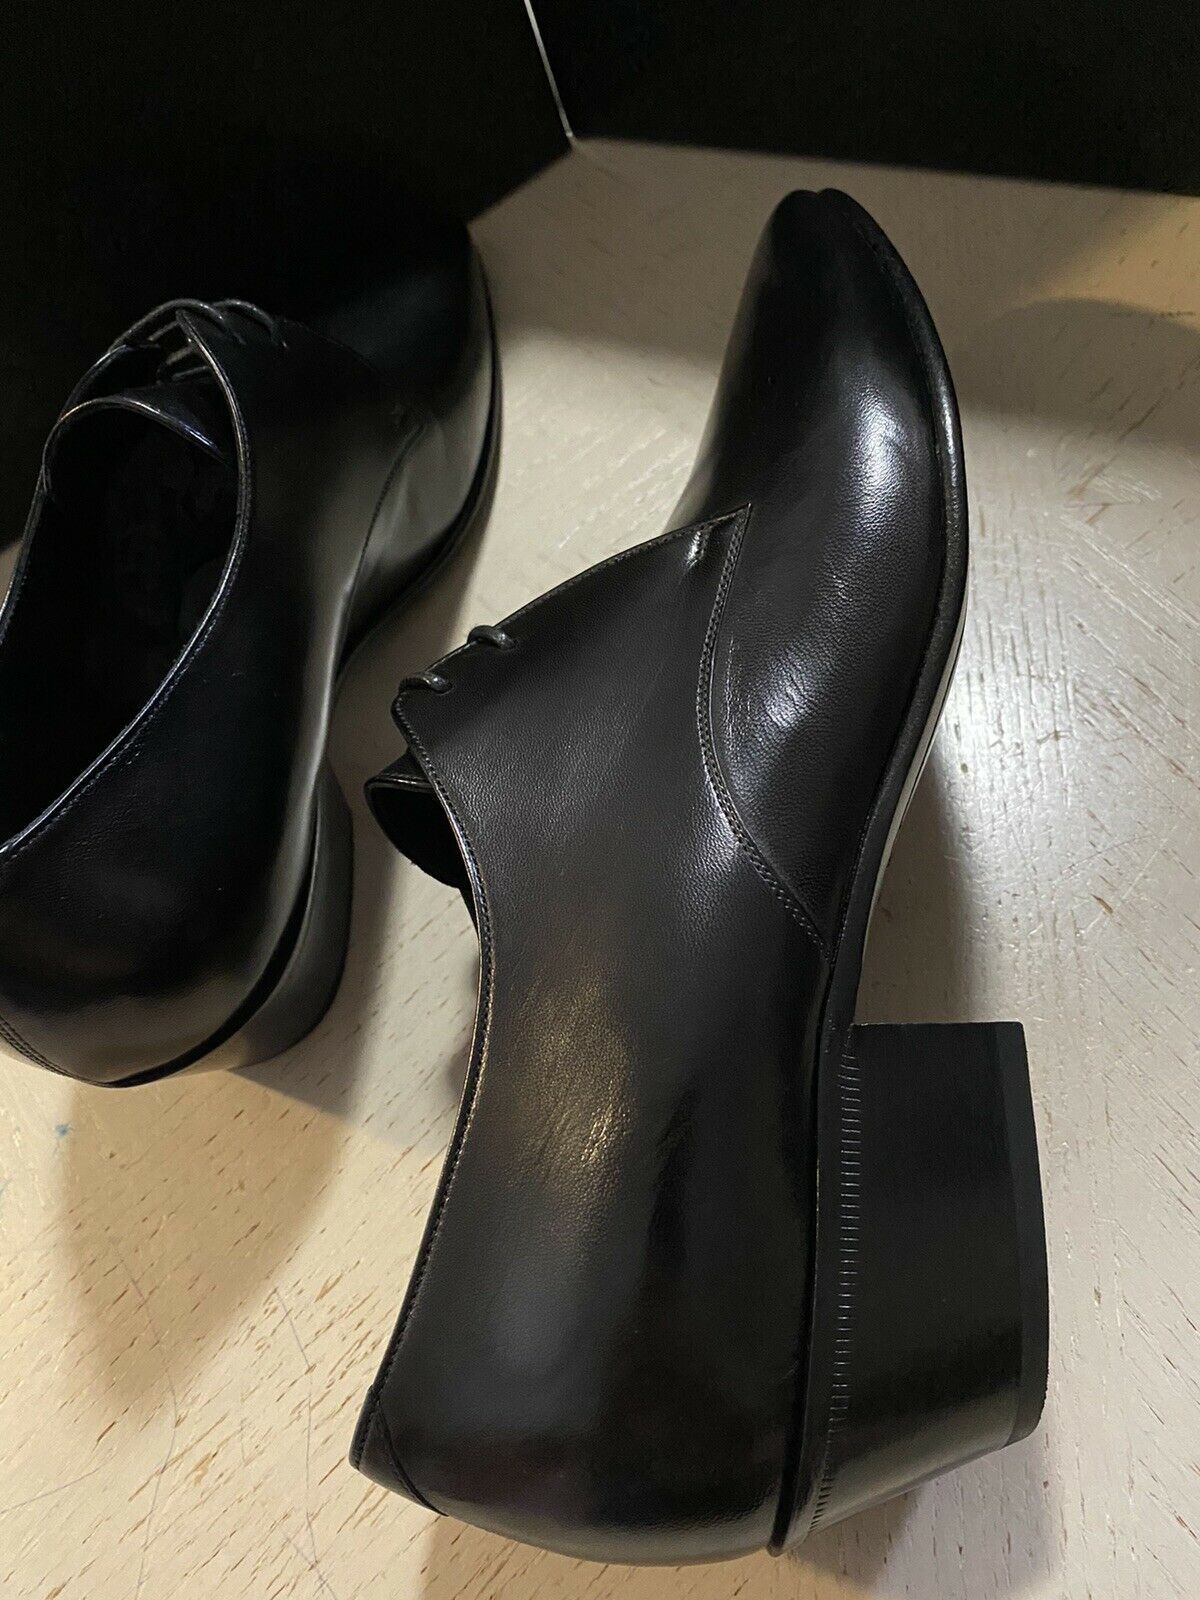 NIB $745 Мужские кожаные классические туфли Saint Lauren, черные 11 США/44 ЕС Италия